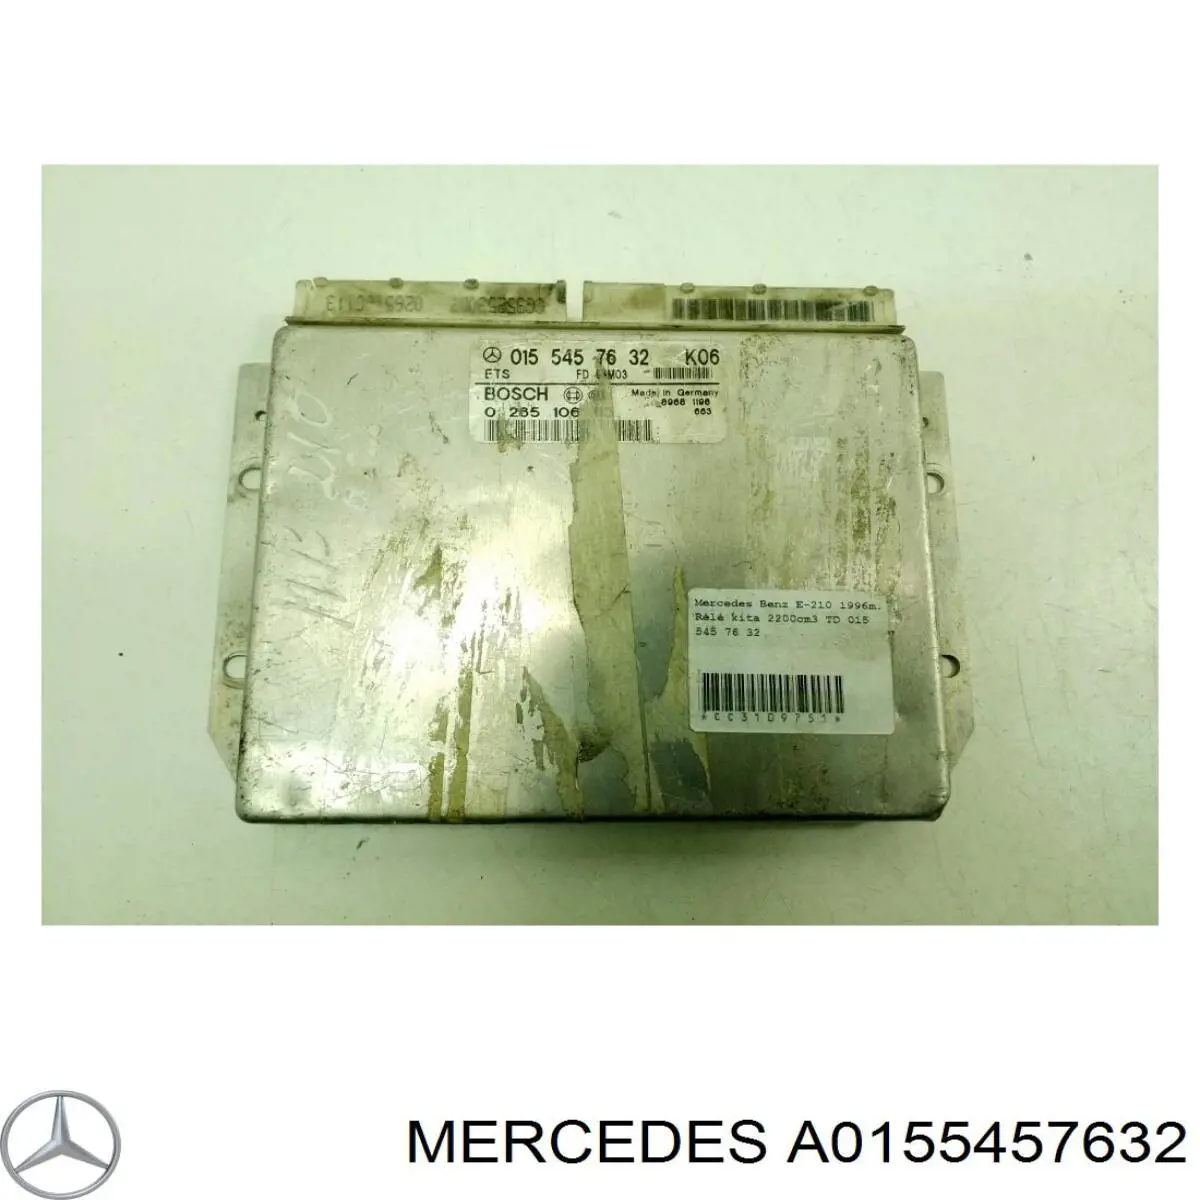 A0155457632 Mercedes блок управления контролем тяги (ets)